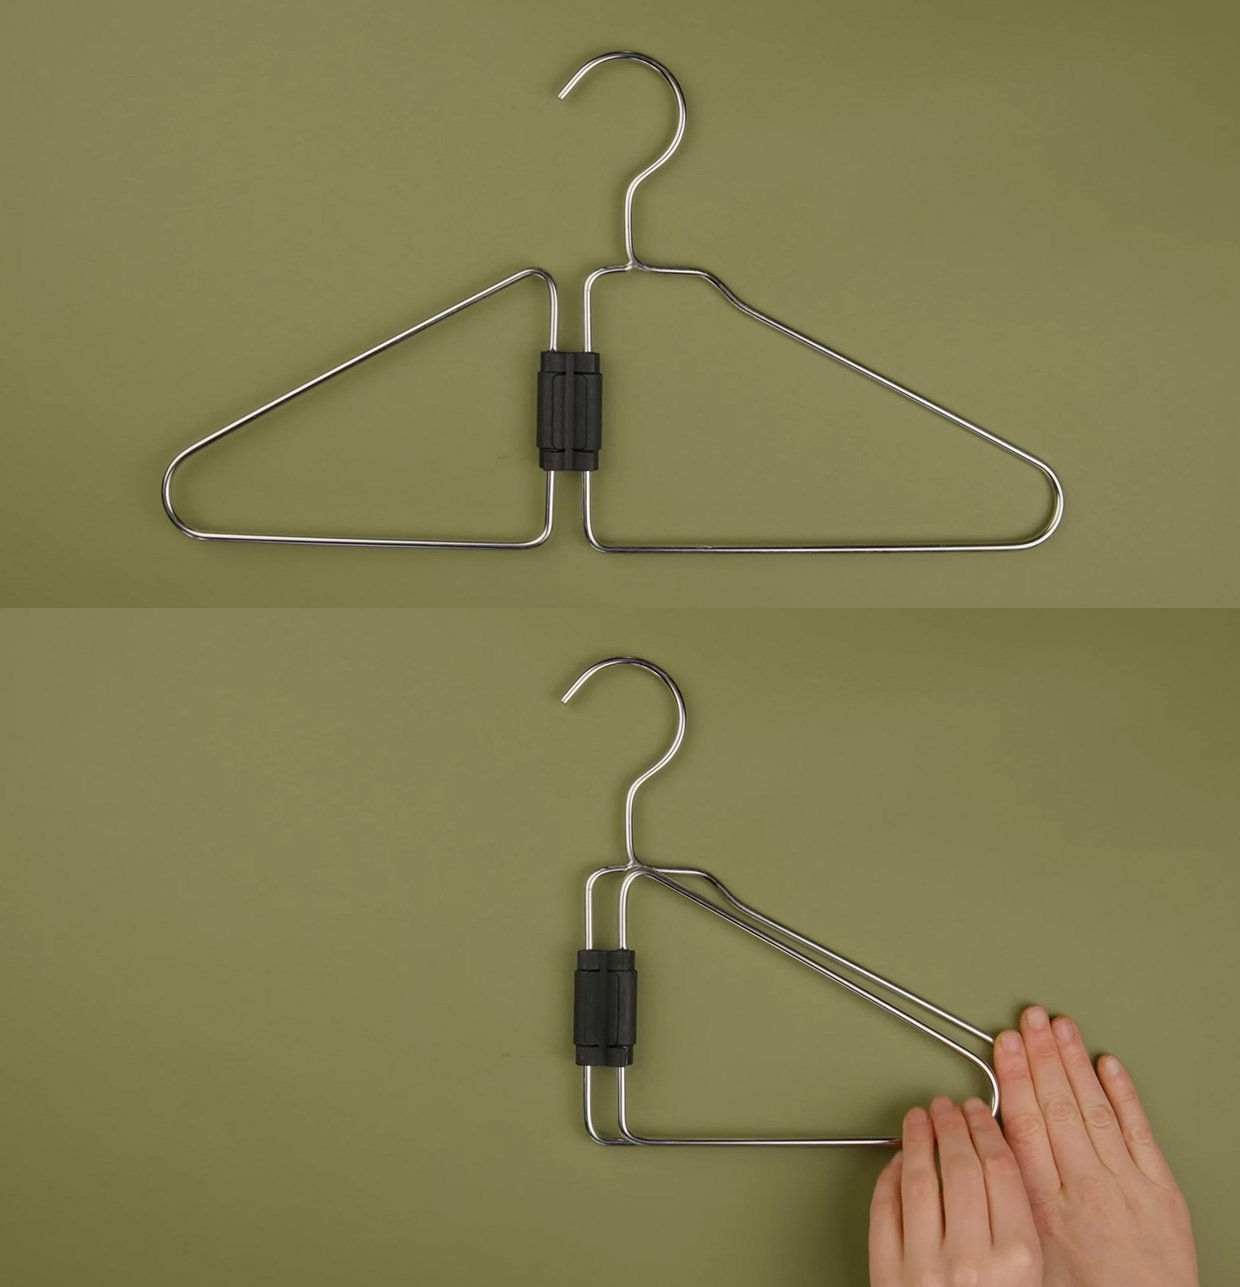 Simone Giertz Makes a Coat Hanger for Coat Hangers 